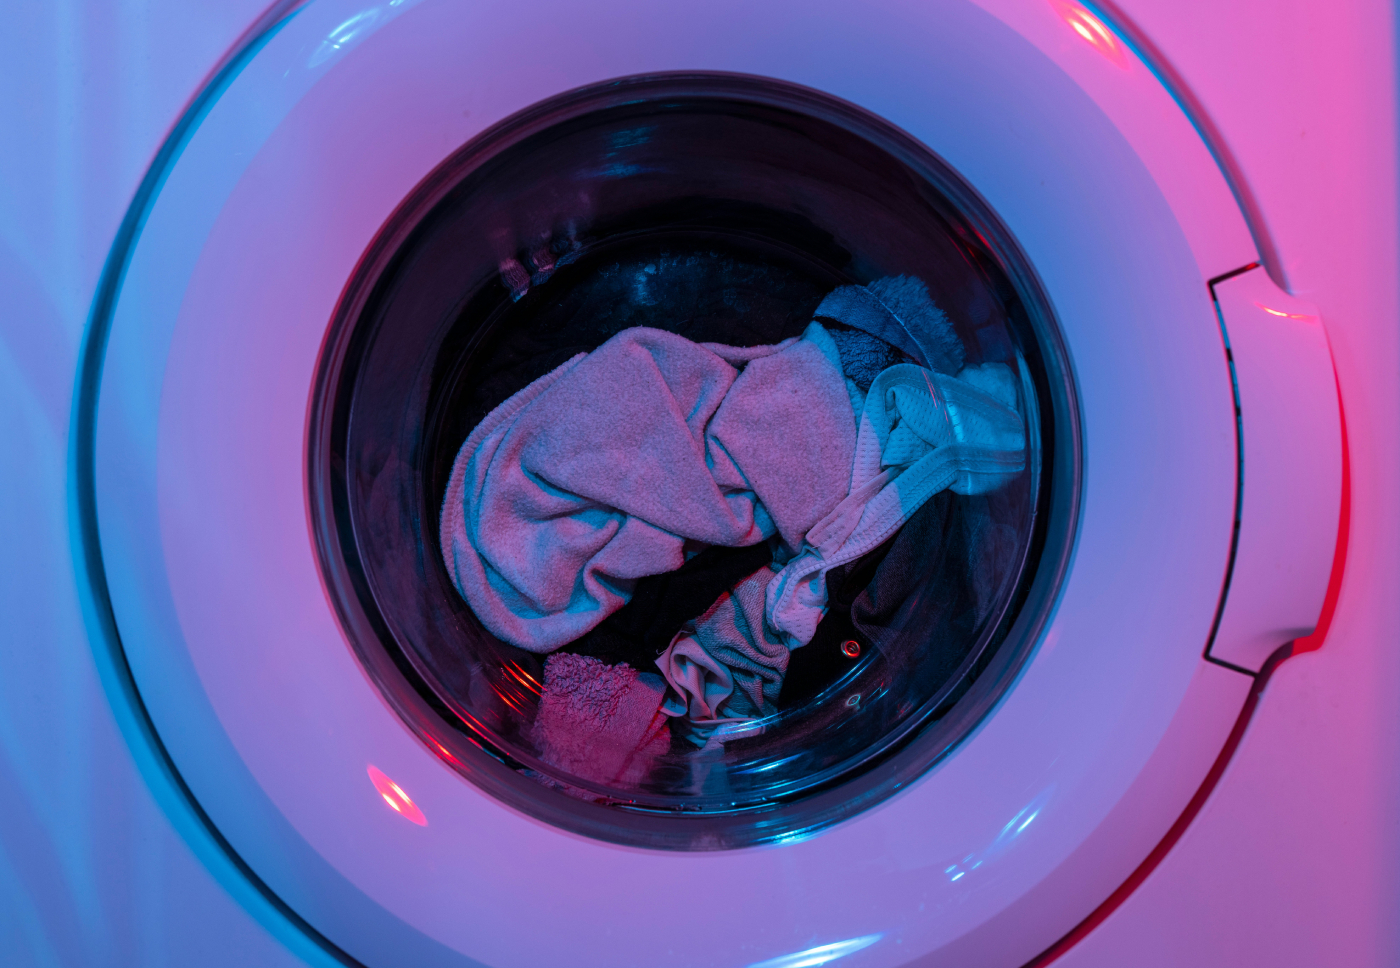 Comment deux étudiants américains arrivent à faire tourner des machines à laver totalement gratuitement